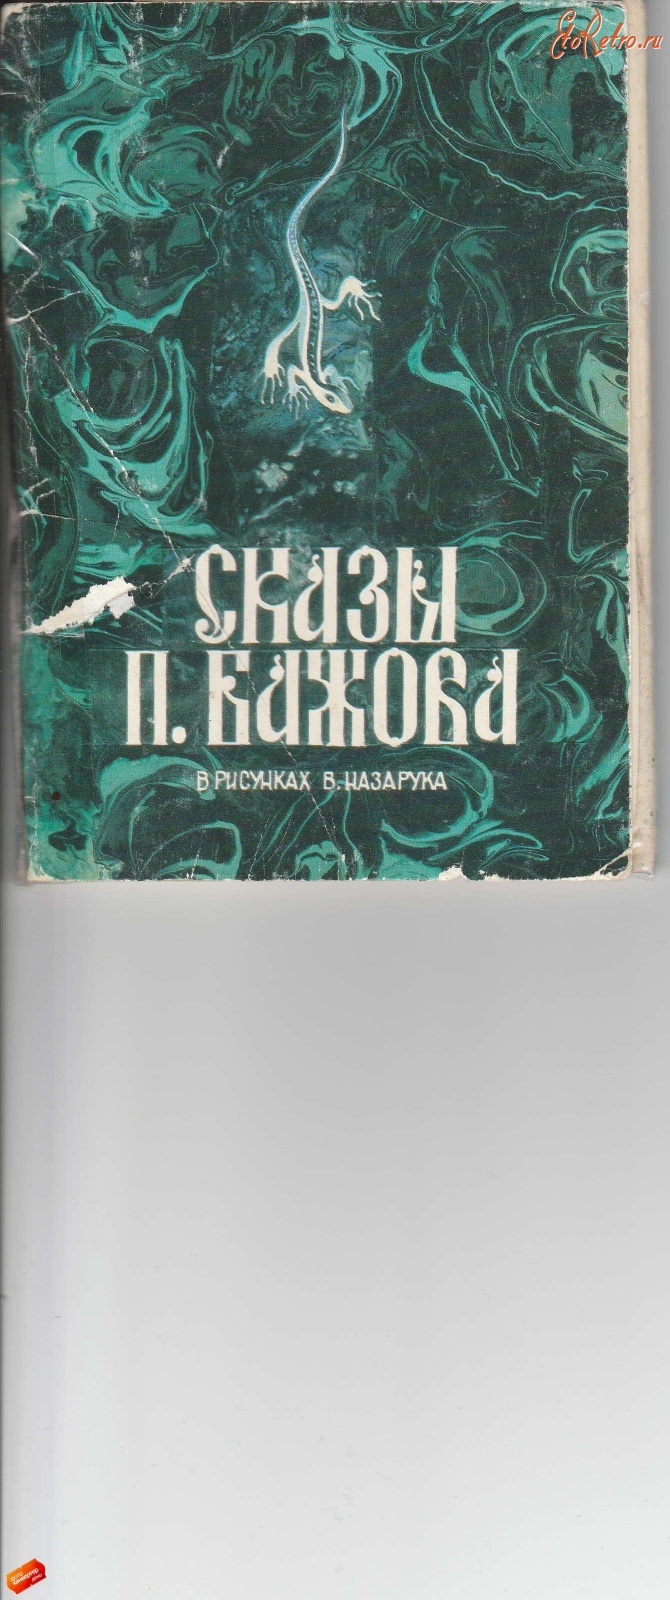 Ретро открытки - Сказы П.Бажова